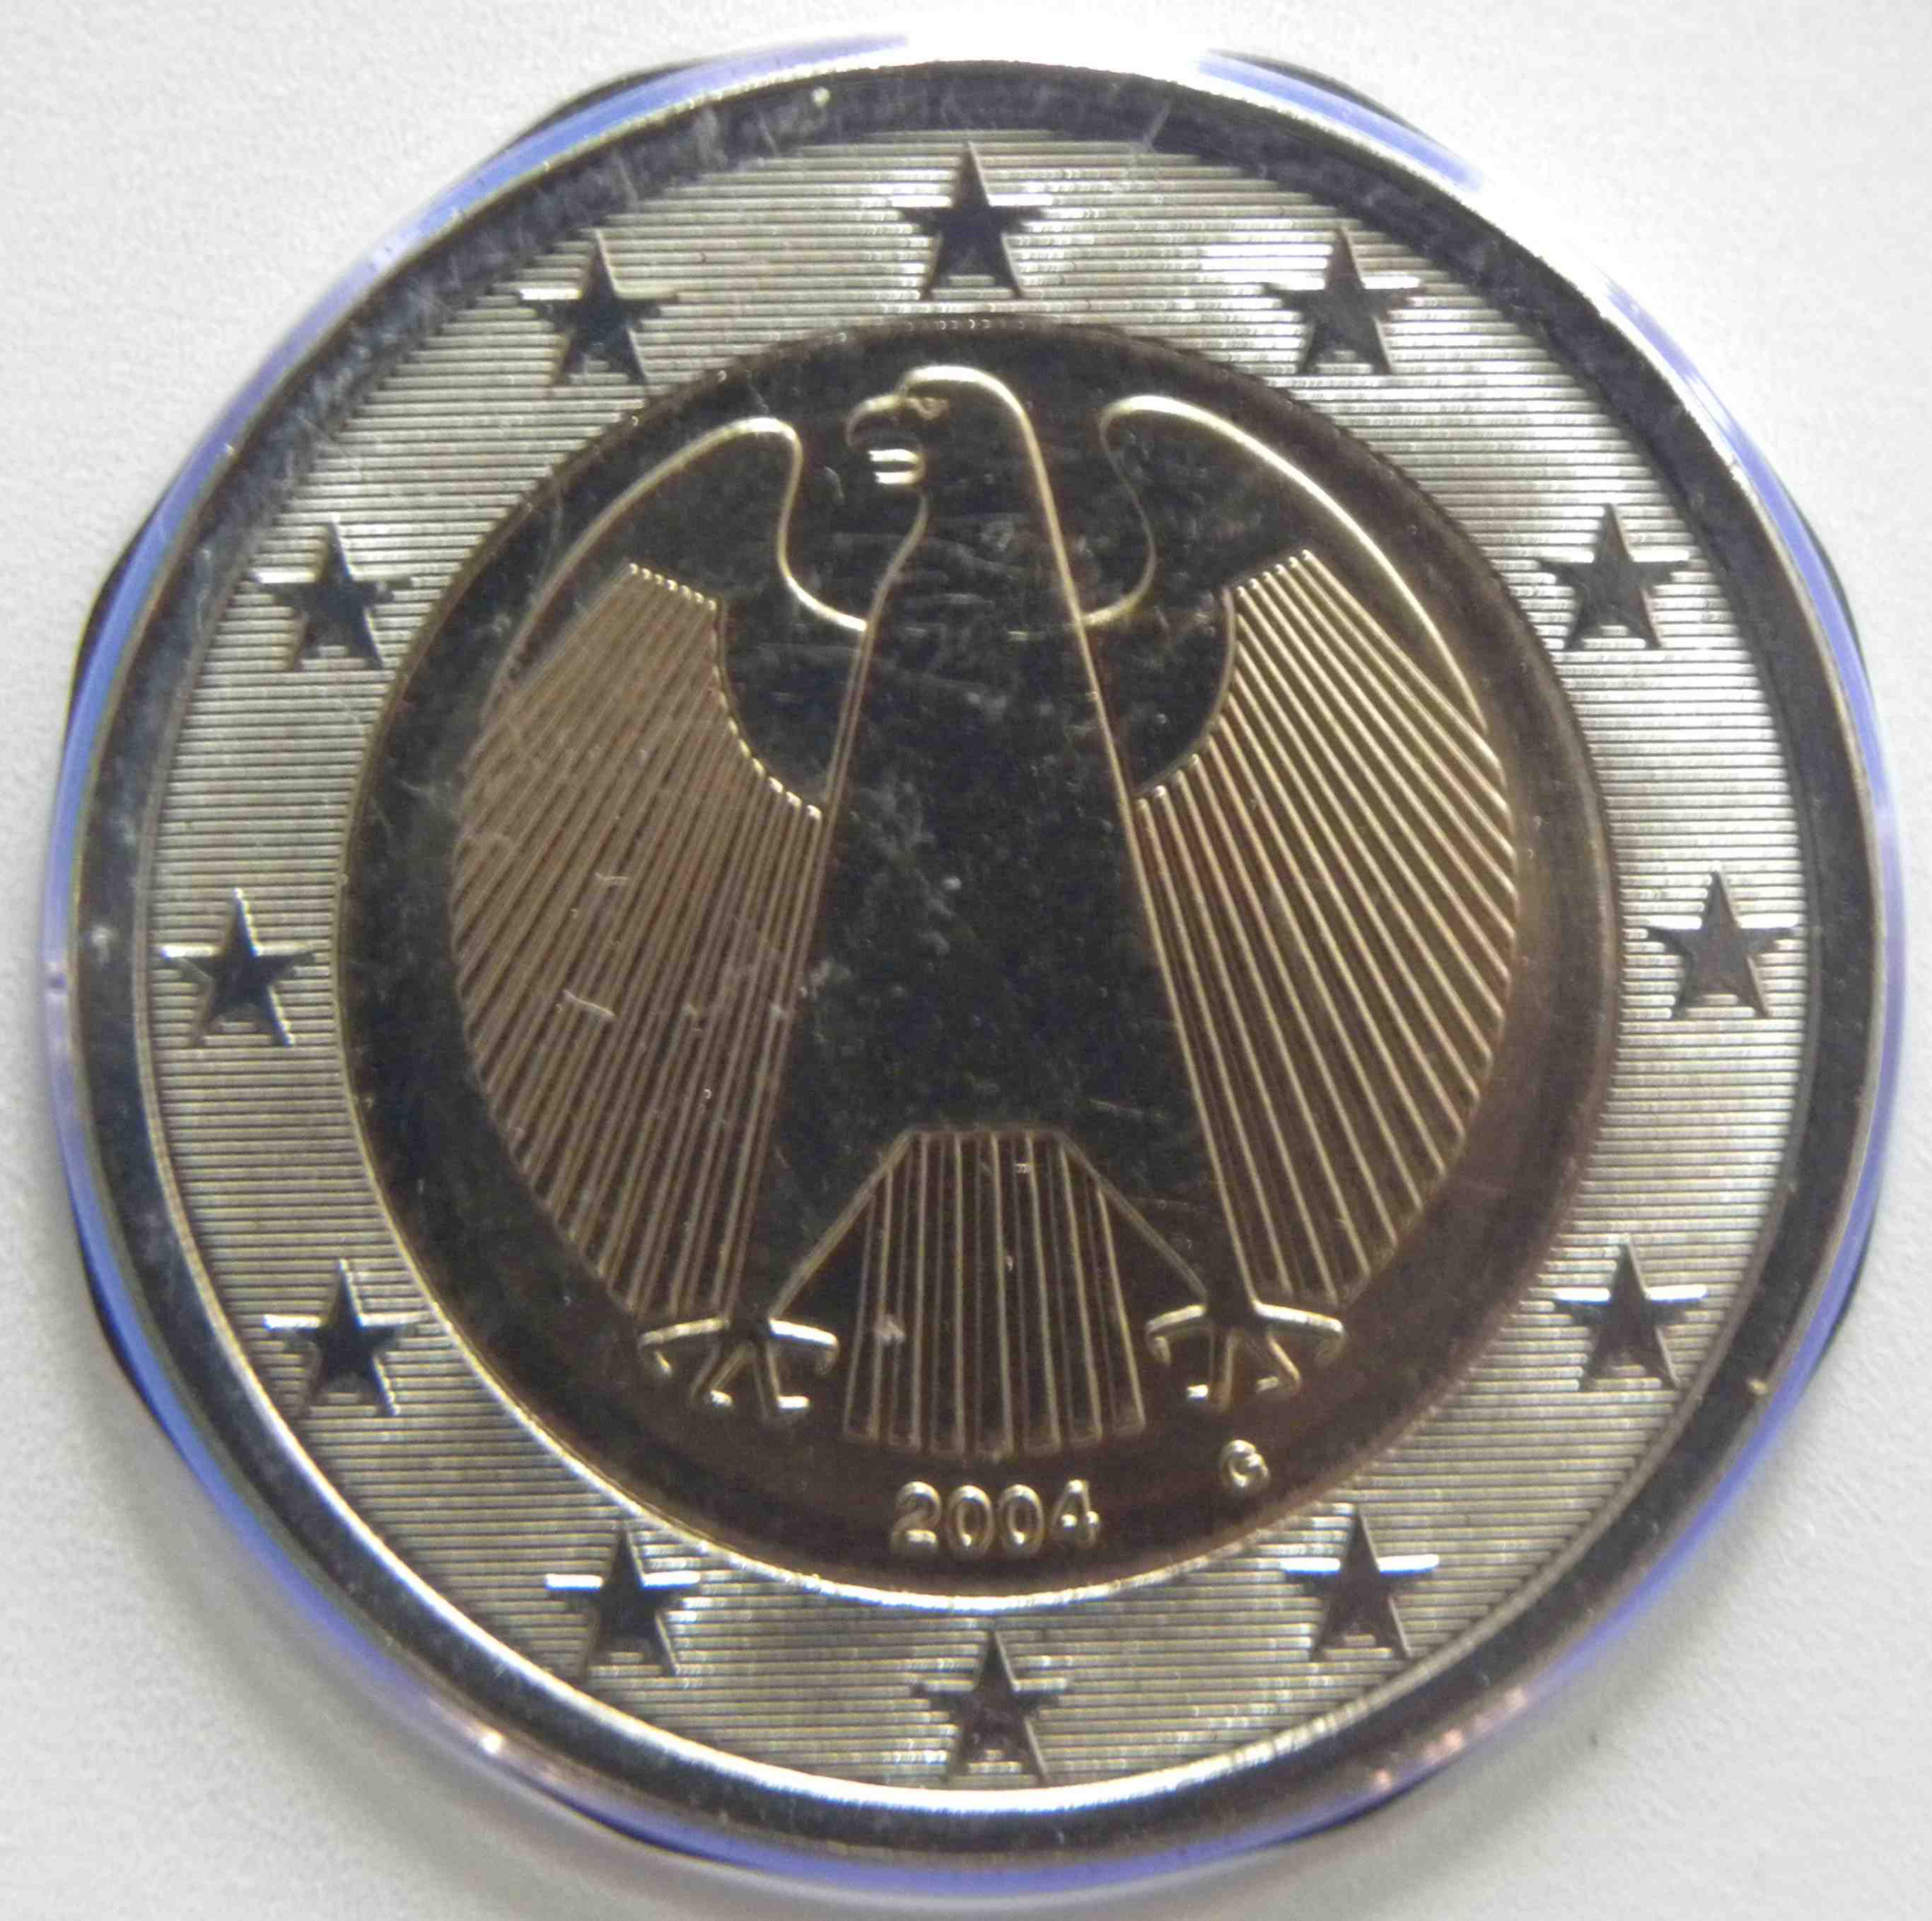 2004 2 coin